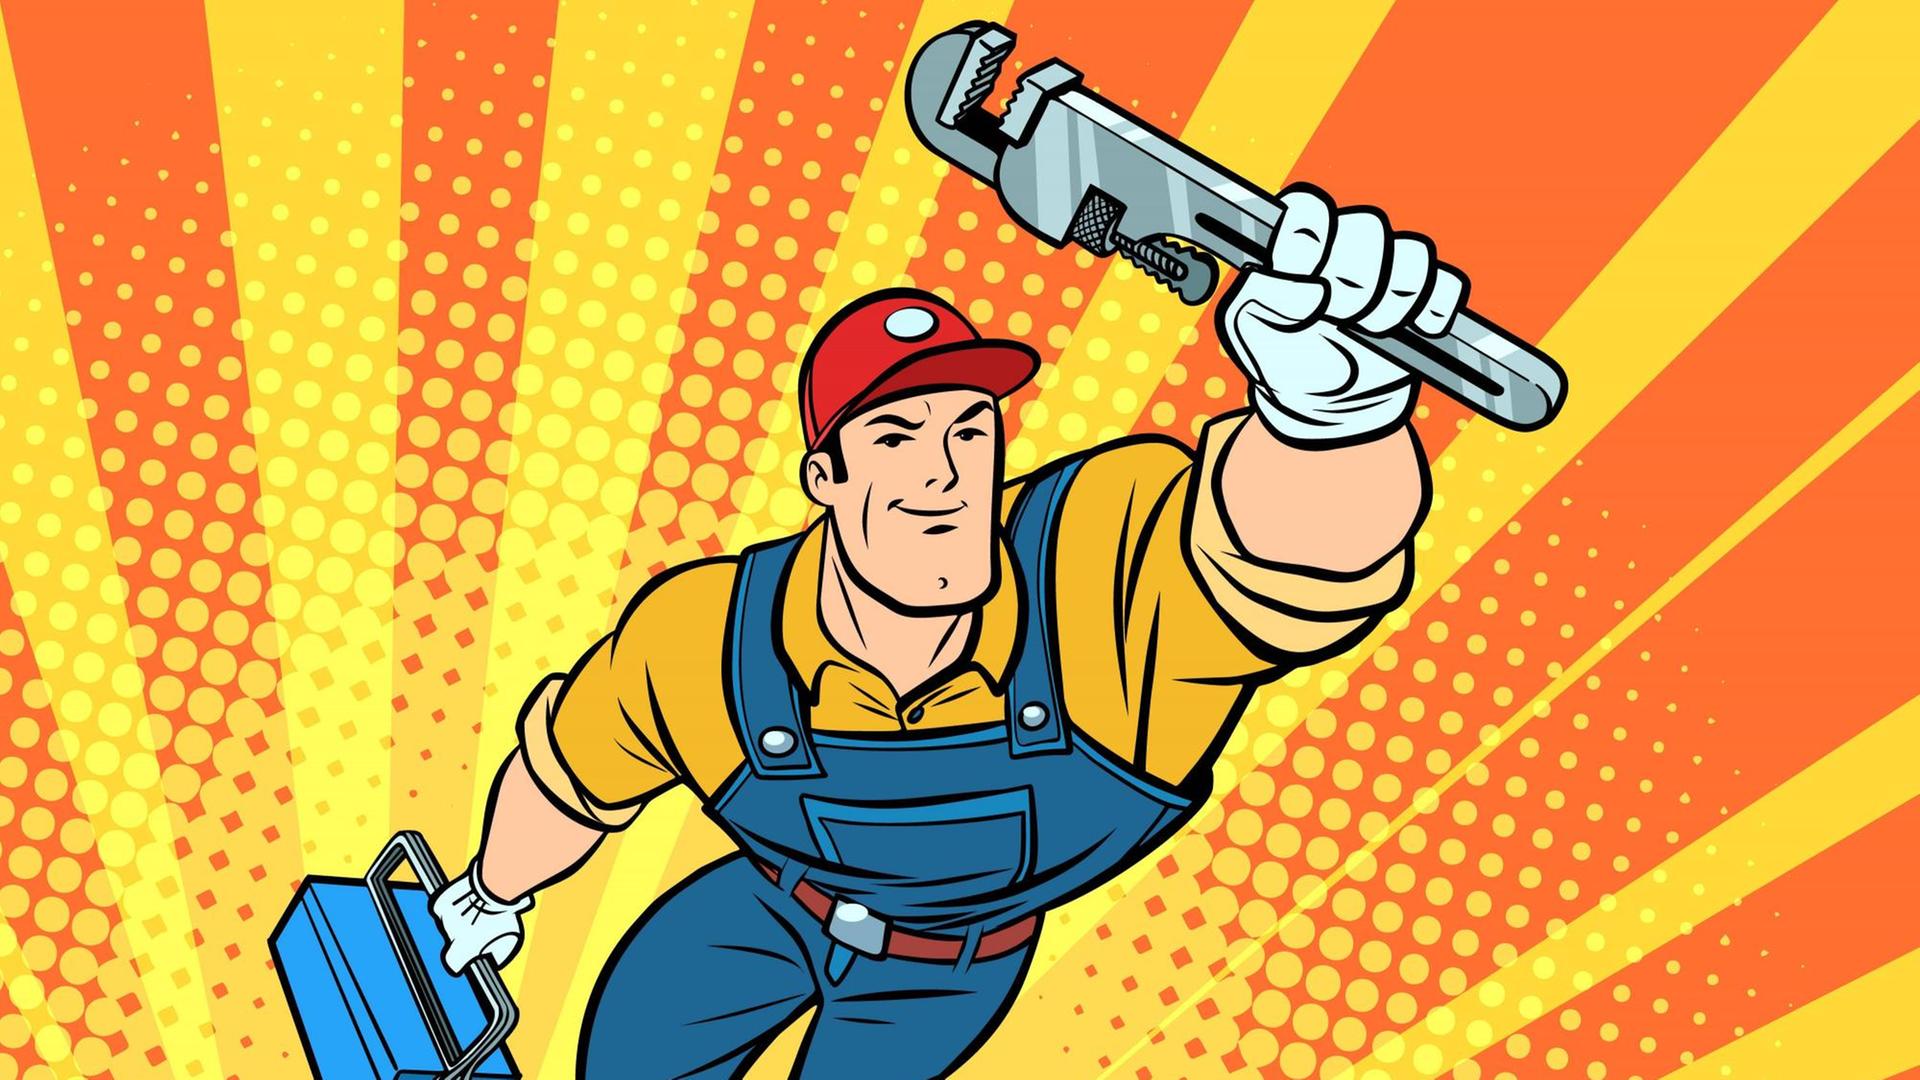 Ein Comic von einem Handwerker, der wie Superman fliegt, in nach oben gereckten linken Hand hält er ein Werkzeug, in der rechten einen Werkzeugkoffer